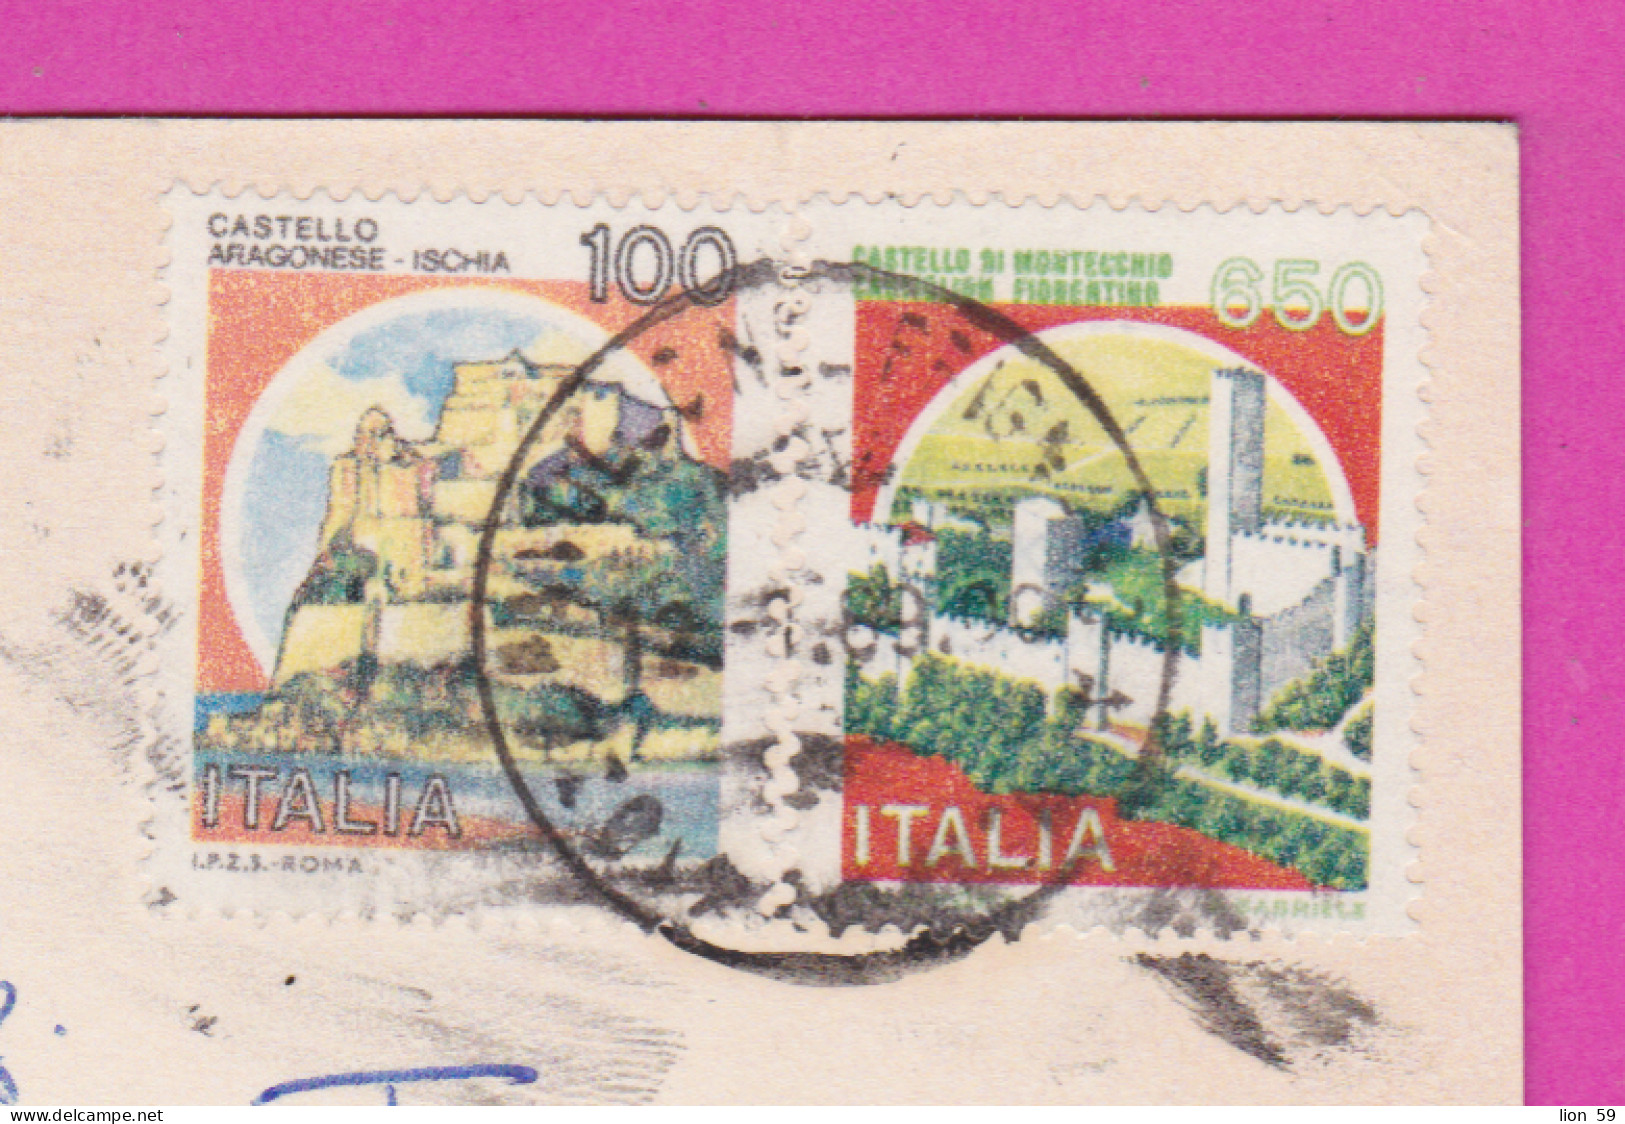 293834 / Italy - Pavullo Nel Frignano M. 686 S.m. PC 1989 USED 100+650 L Castello Di Montecchio, Castiglion Fiorentino - 1981-90: Marcofilia